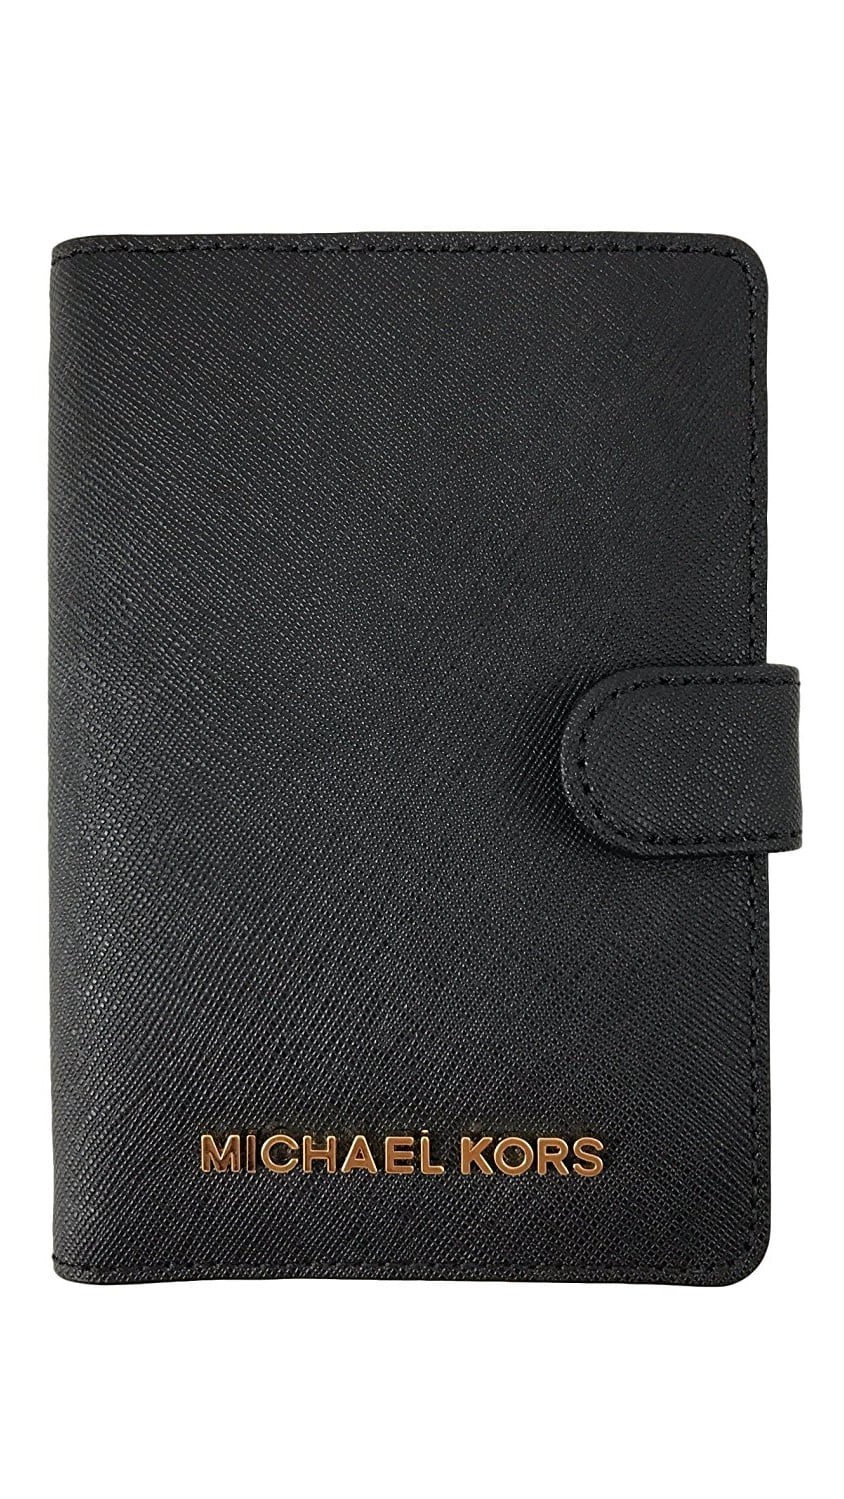 michael kors travel document holder